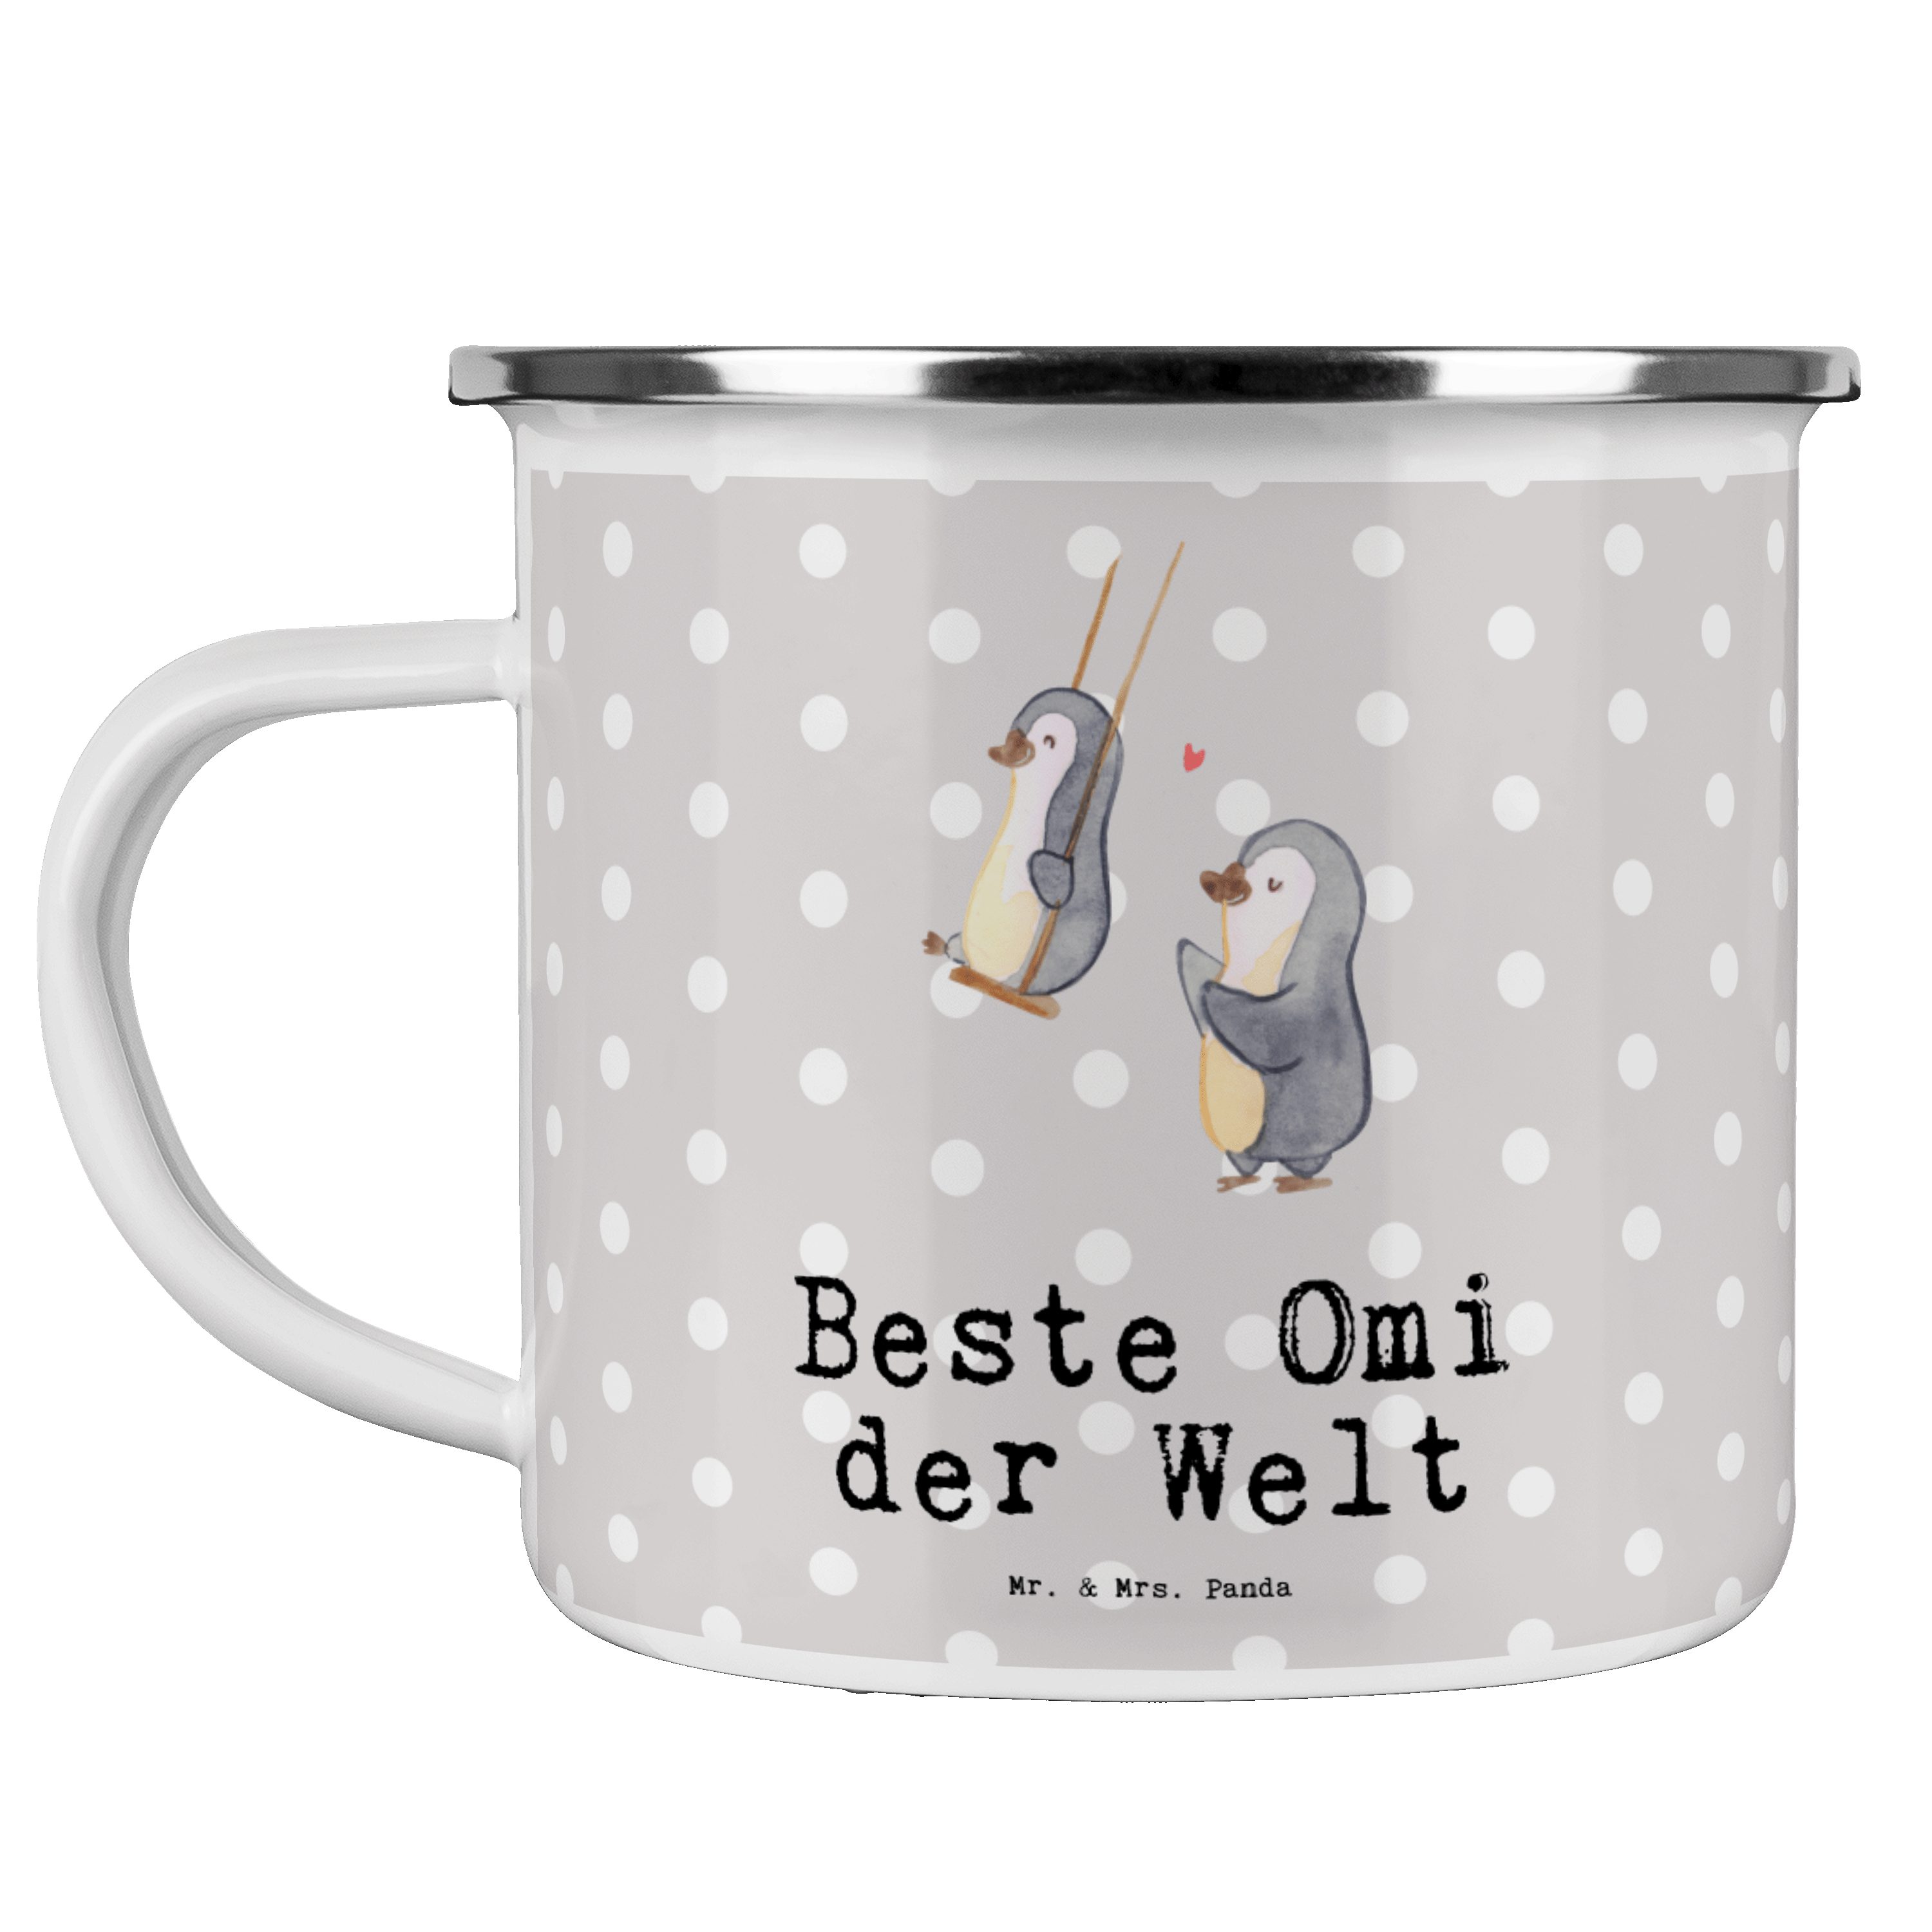 Mr. & Mrs. Panda Becher Pinguin Beste Omi der Welt - Grau Pastell - Geschenk, Kaffee Blechtas, Emaille